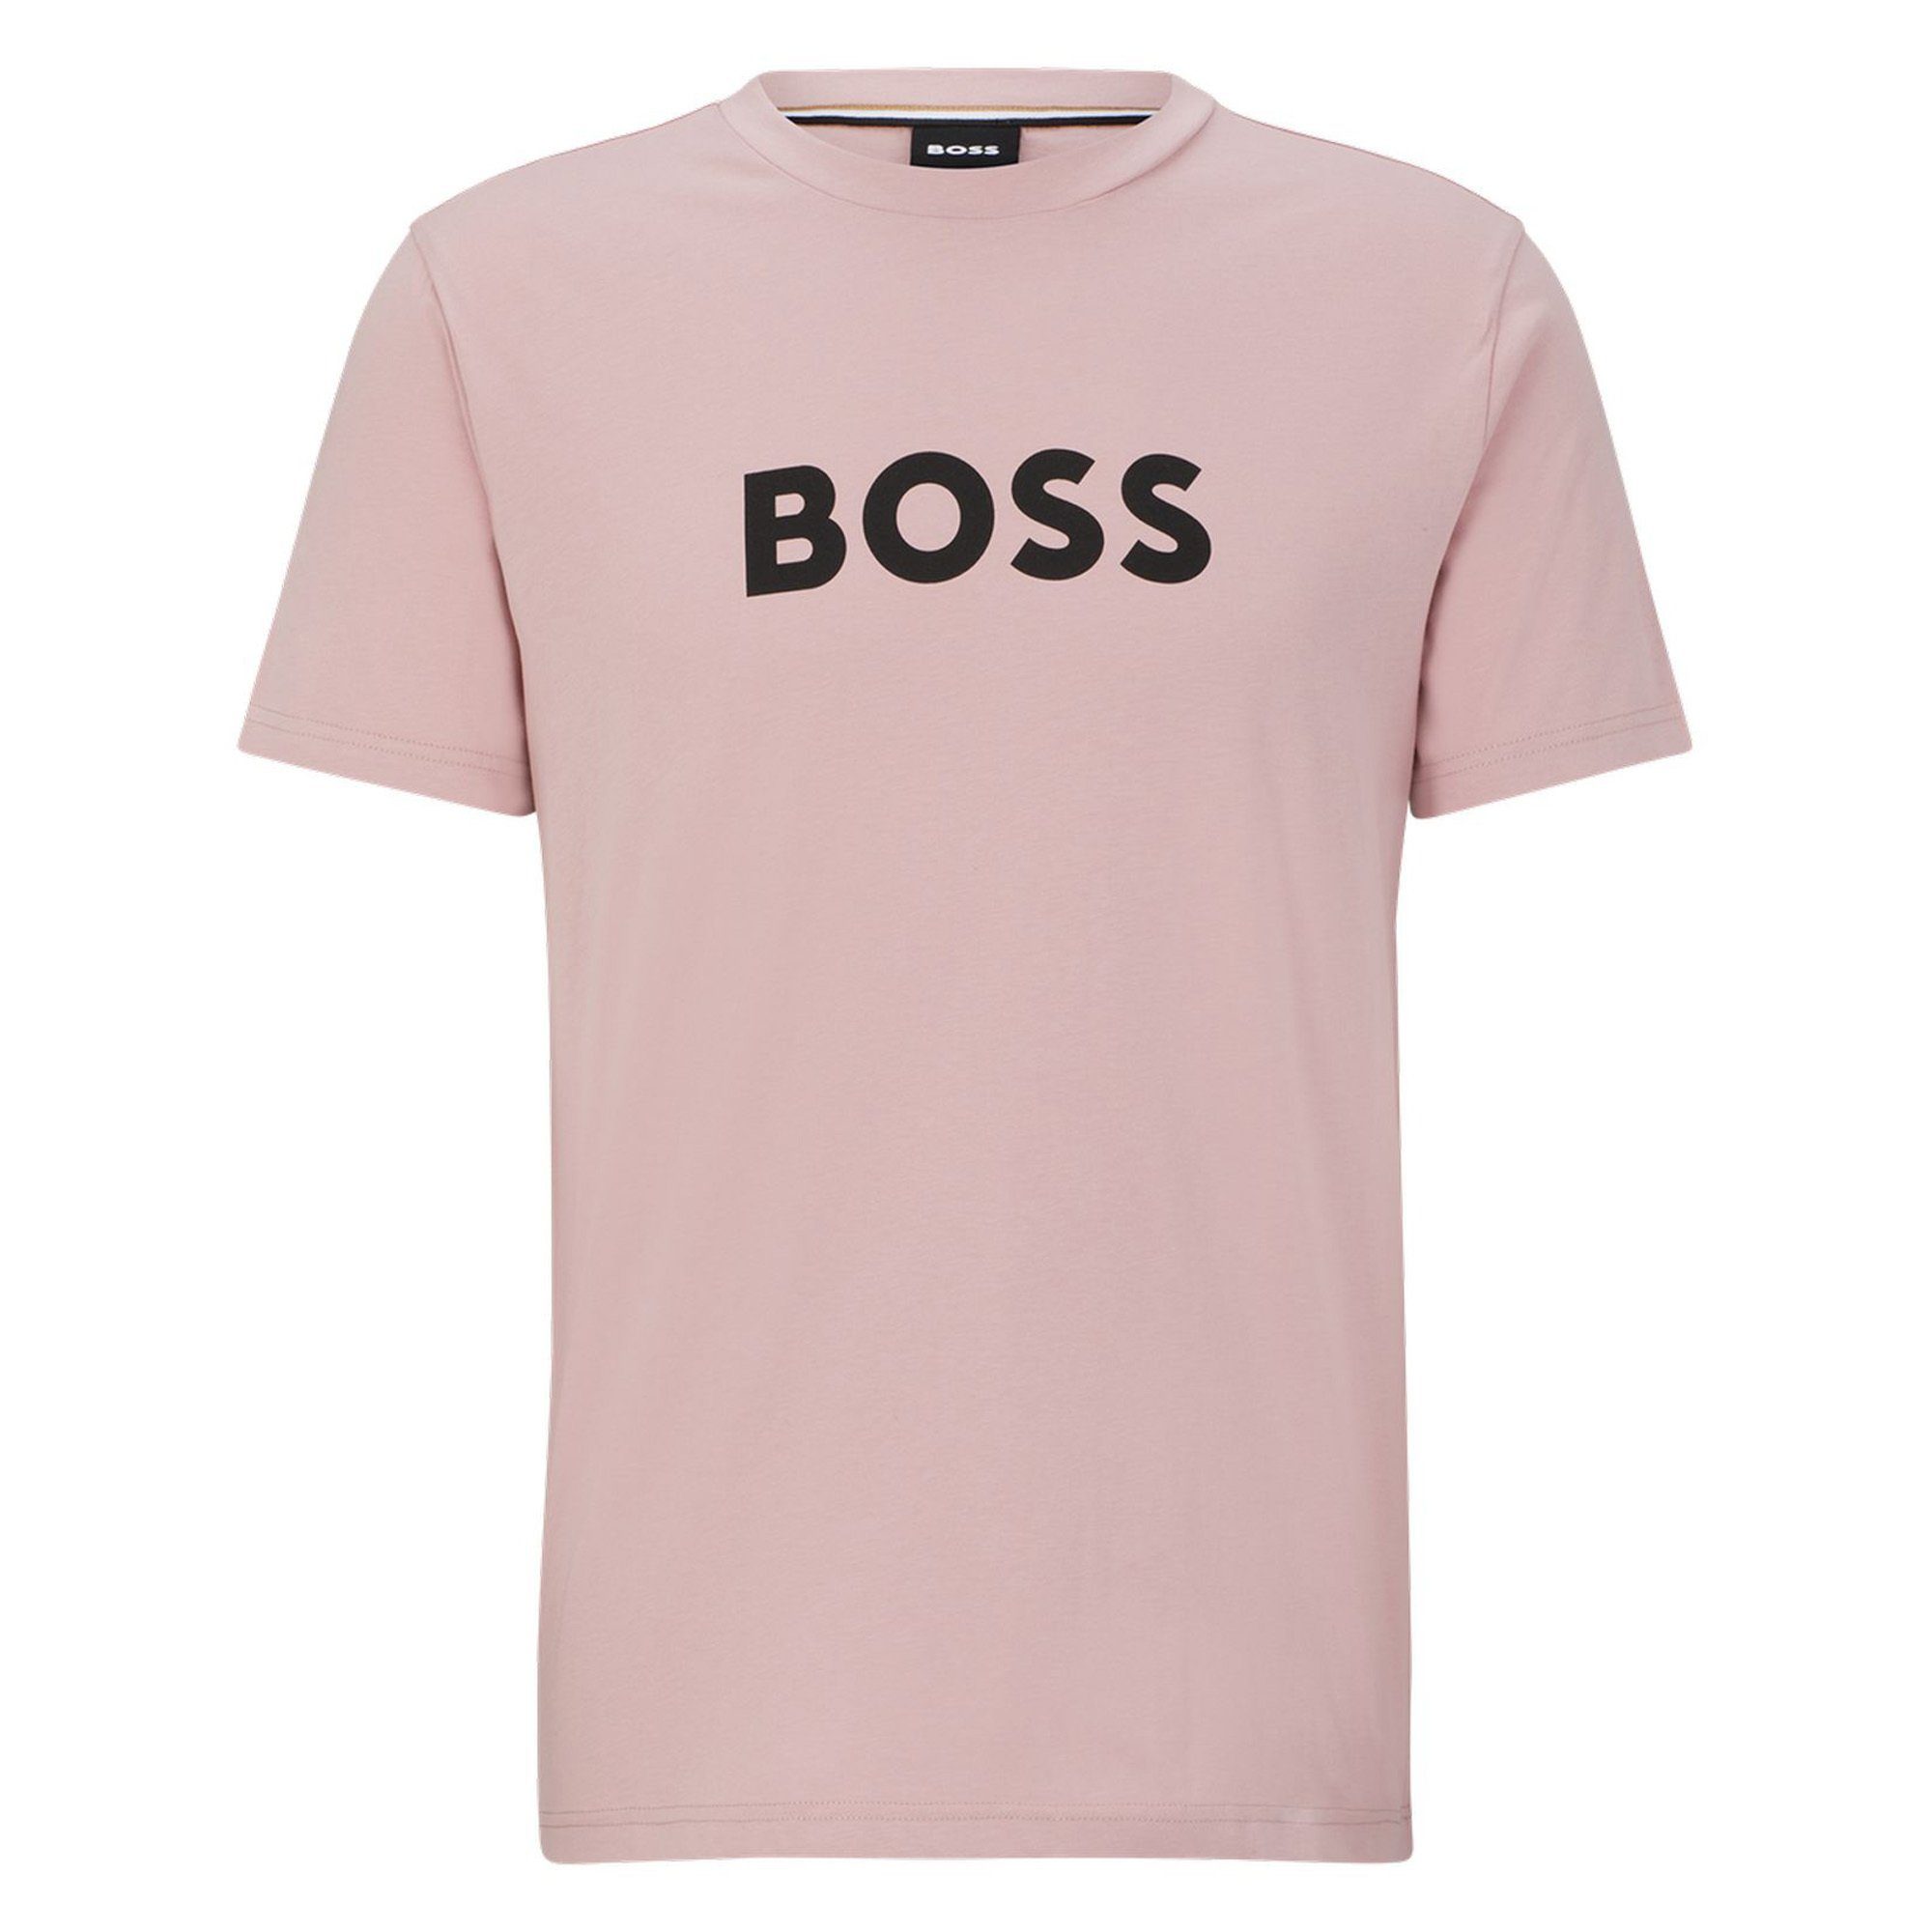 T-Shirt - T-Shirt Kurzarm Rosa BOSS Rundhals, T-Shirt Herren RN,